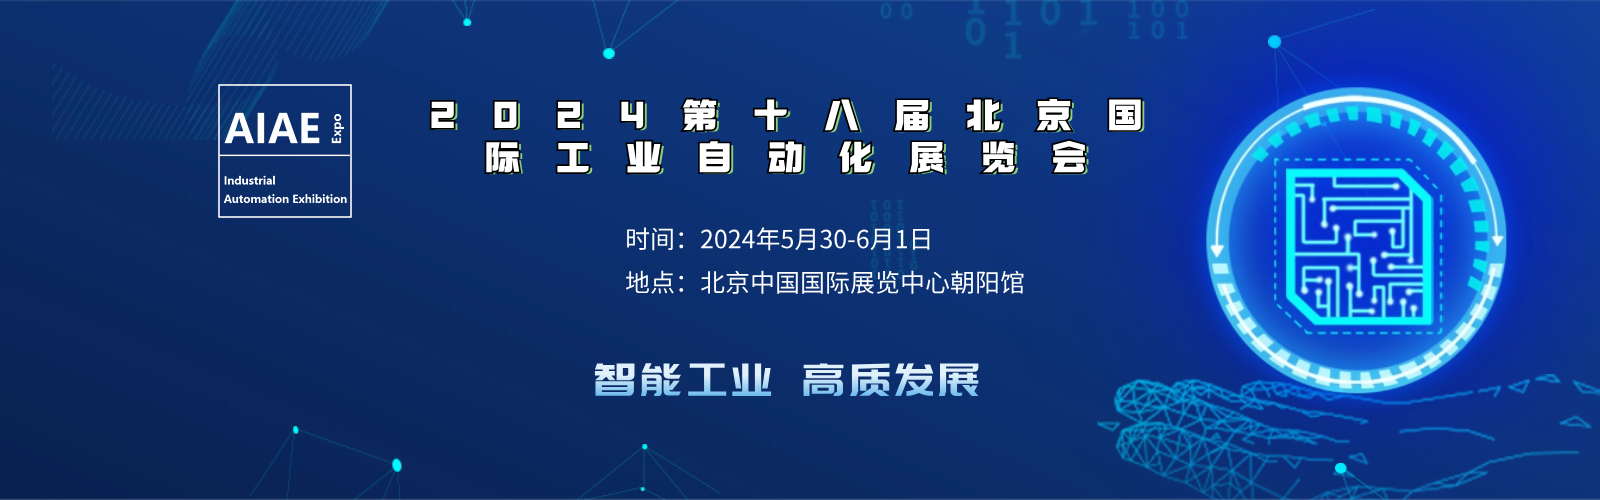 2024北京國際工業自動化展覽會舉辦時間地點